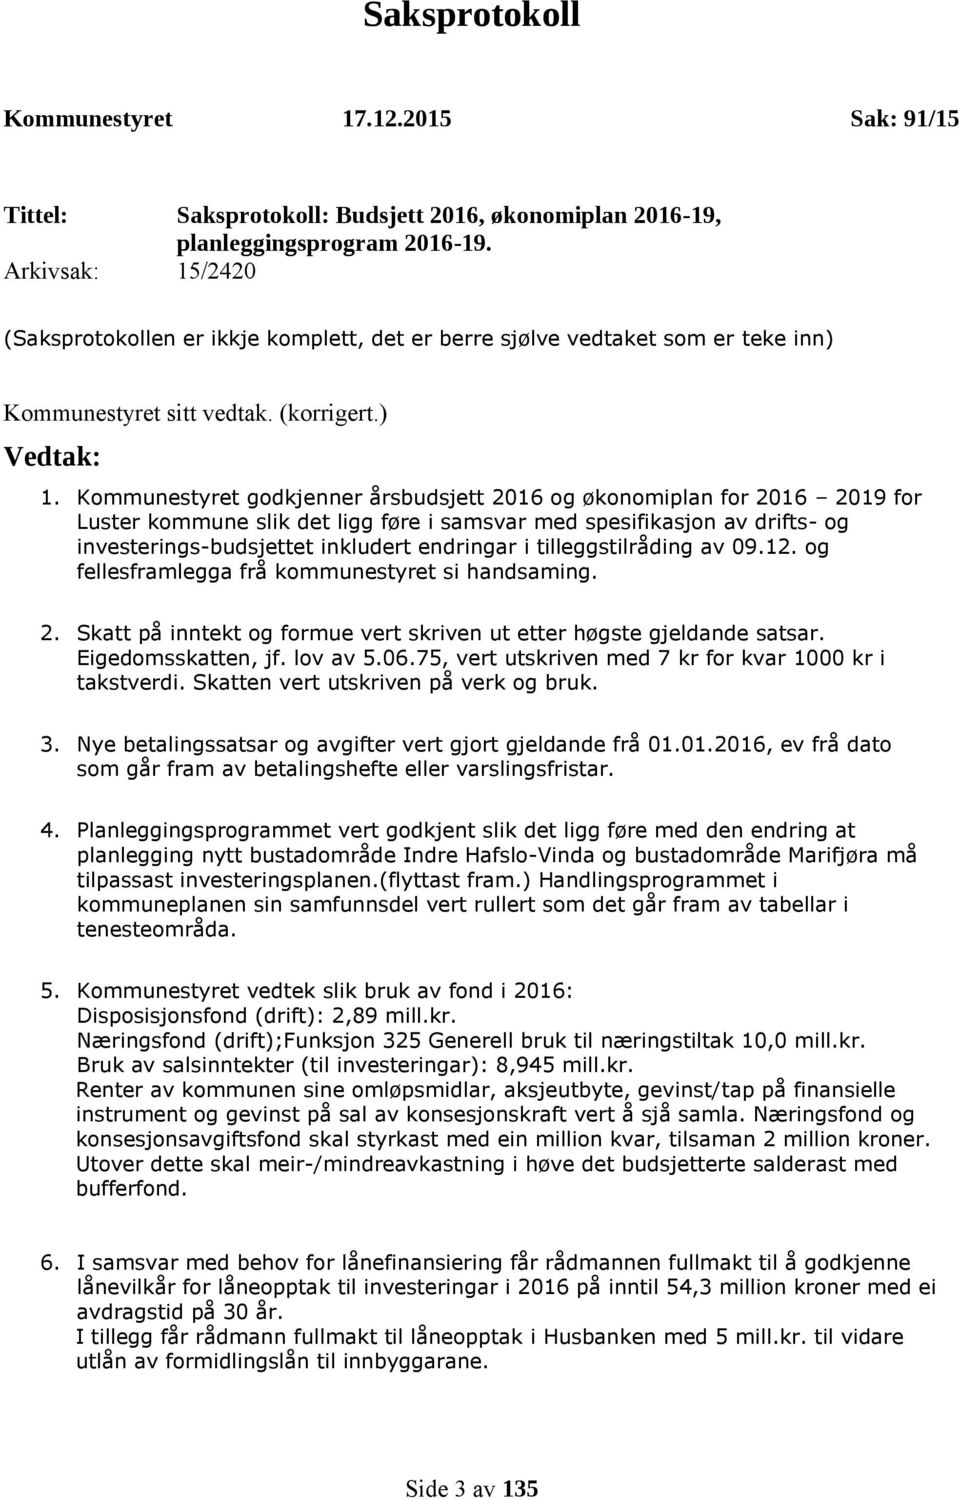 Kommunestyret godkjenner årsbudsjett 2016 og økonomiplan for 2016 2019 for Luster kommune slik det ligg føre i samsvar med spesifikasjon av drifts- og investerings-budsjettet inkludert endringar i